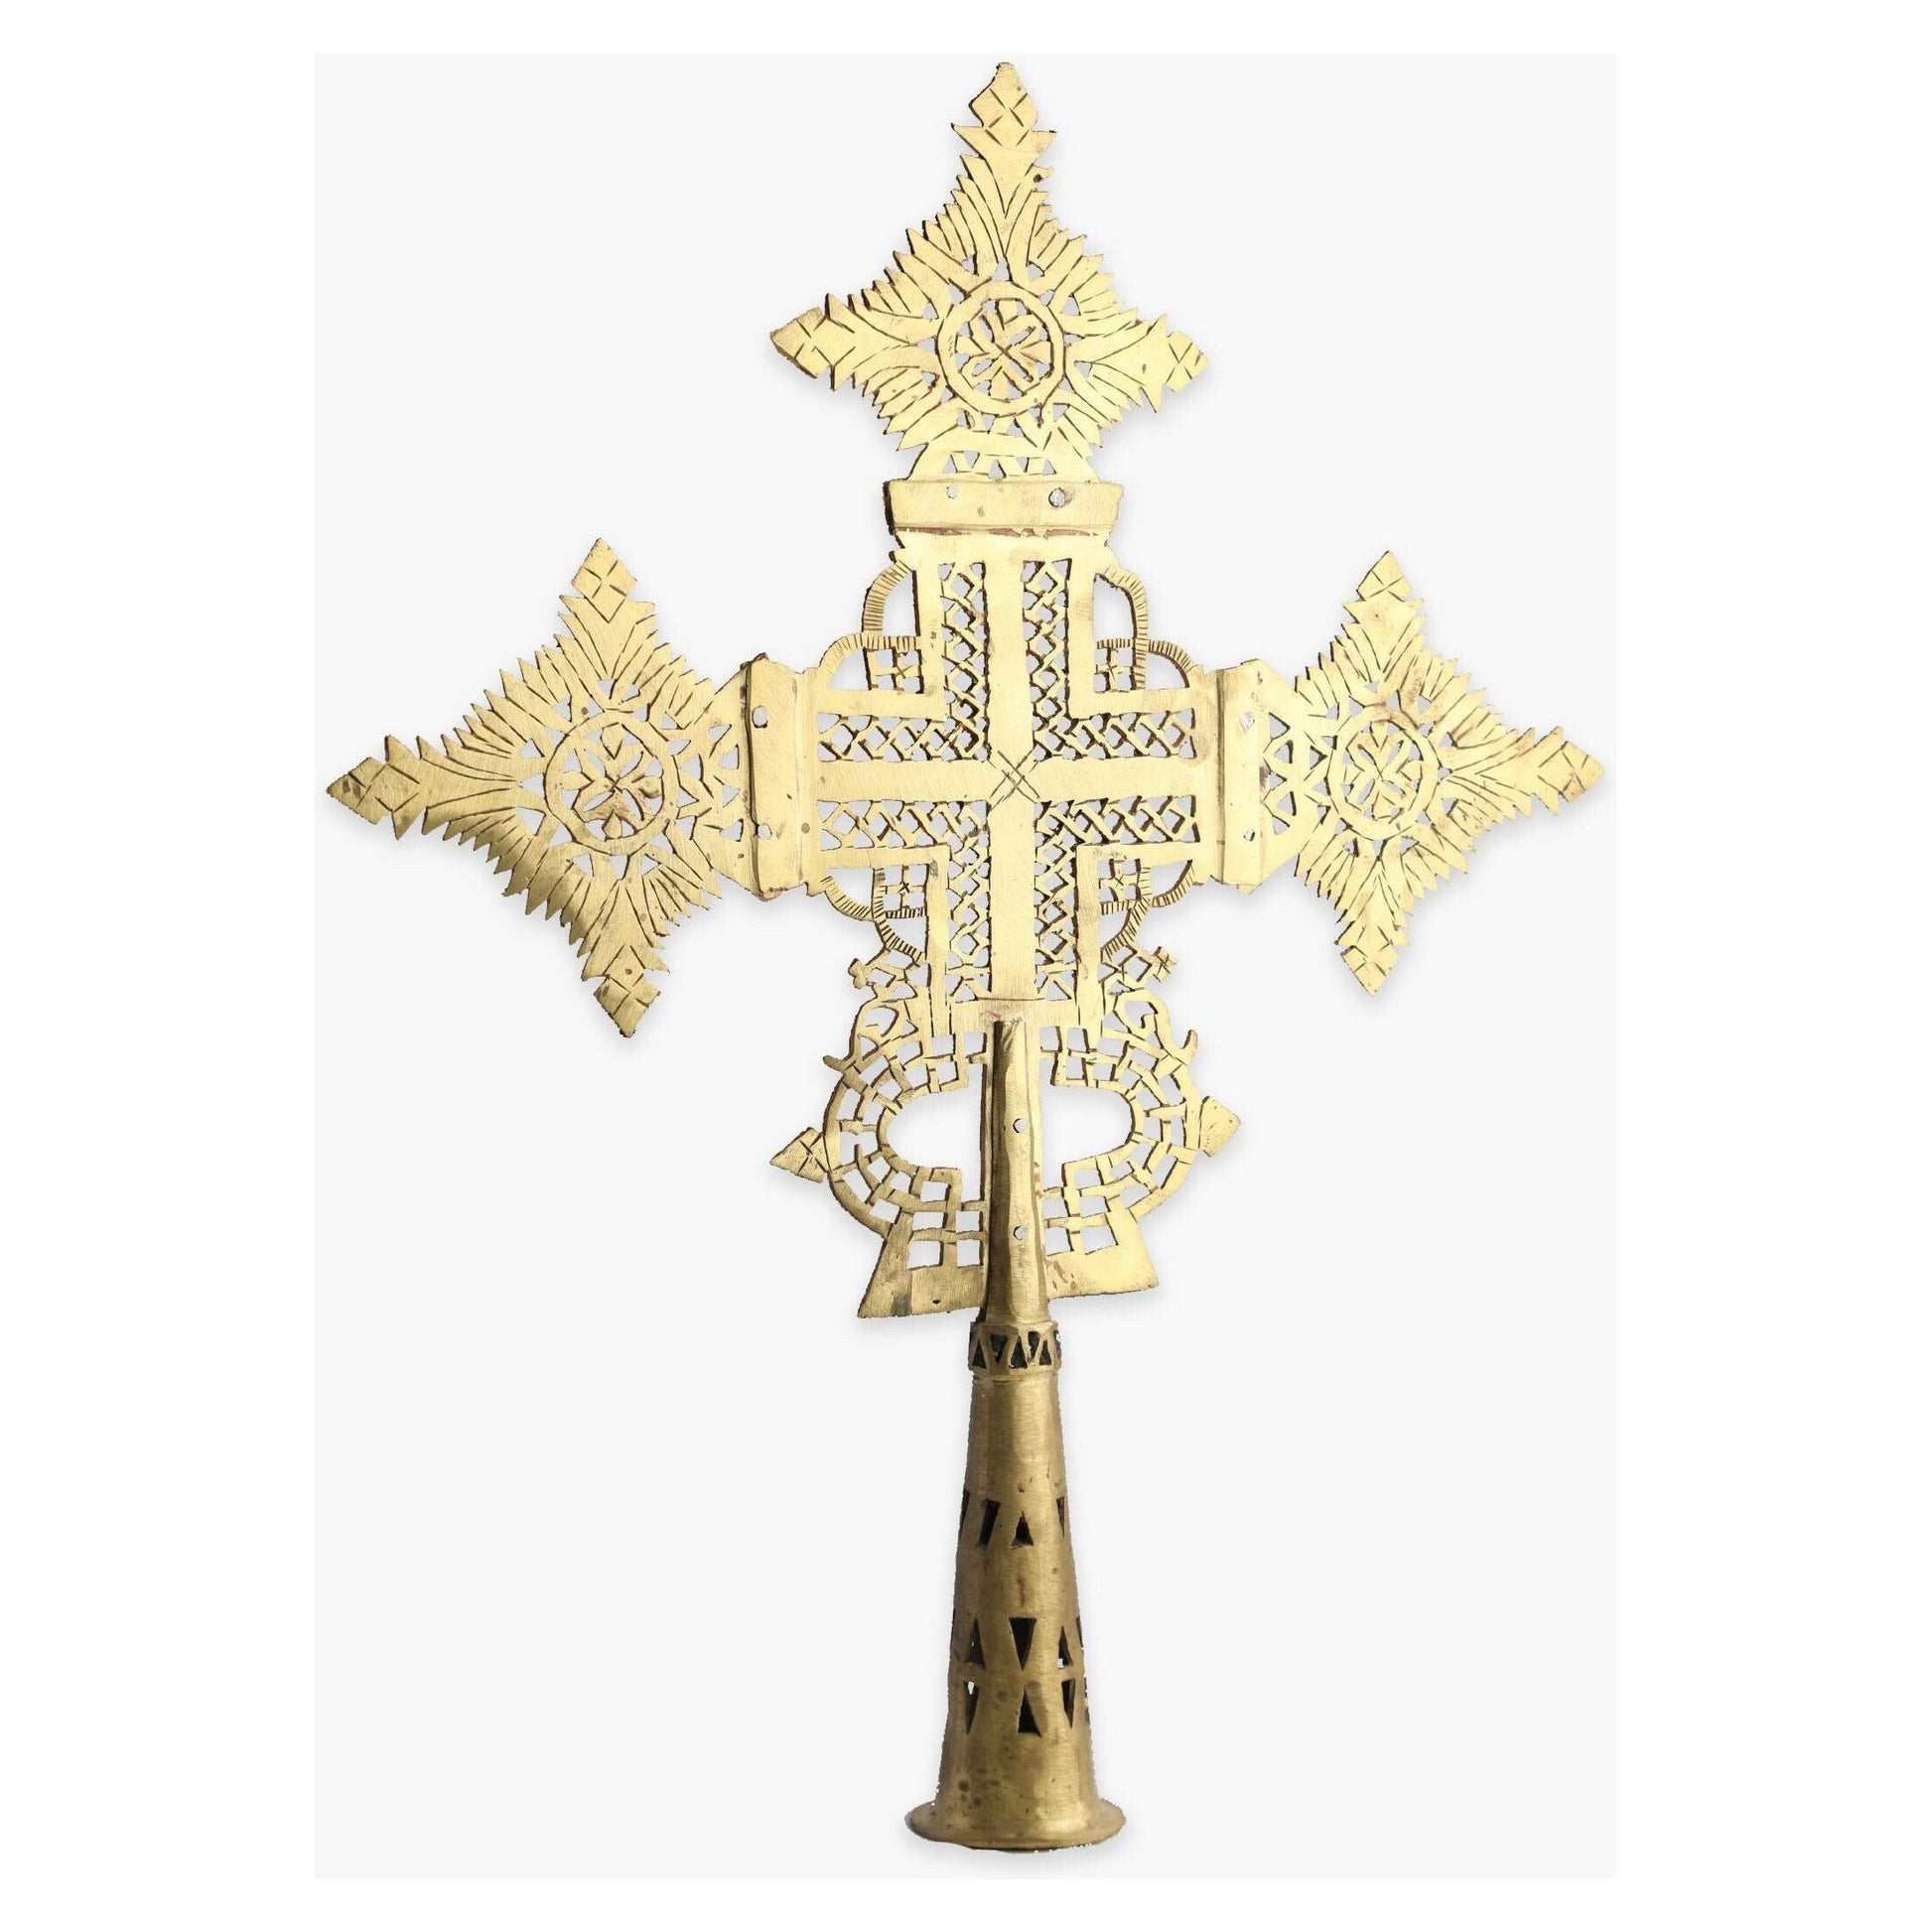 ትልቁ የነሀስ ጦር ማር መስቀል Big Tormar Cross Handmade from Bronze Cross for Wall Orthodox Cross Handmade Cross